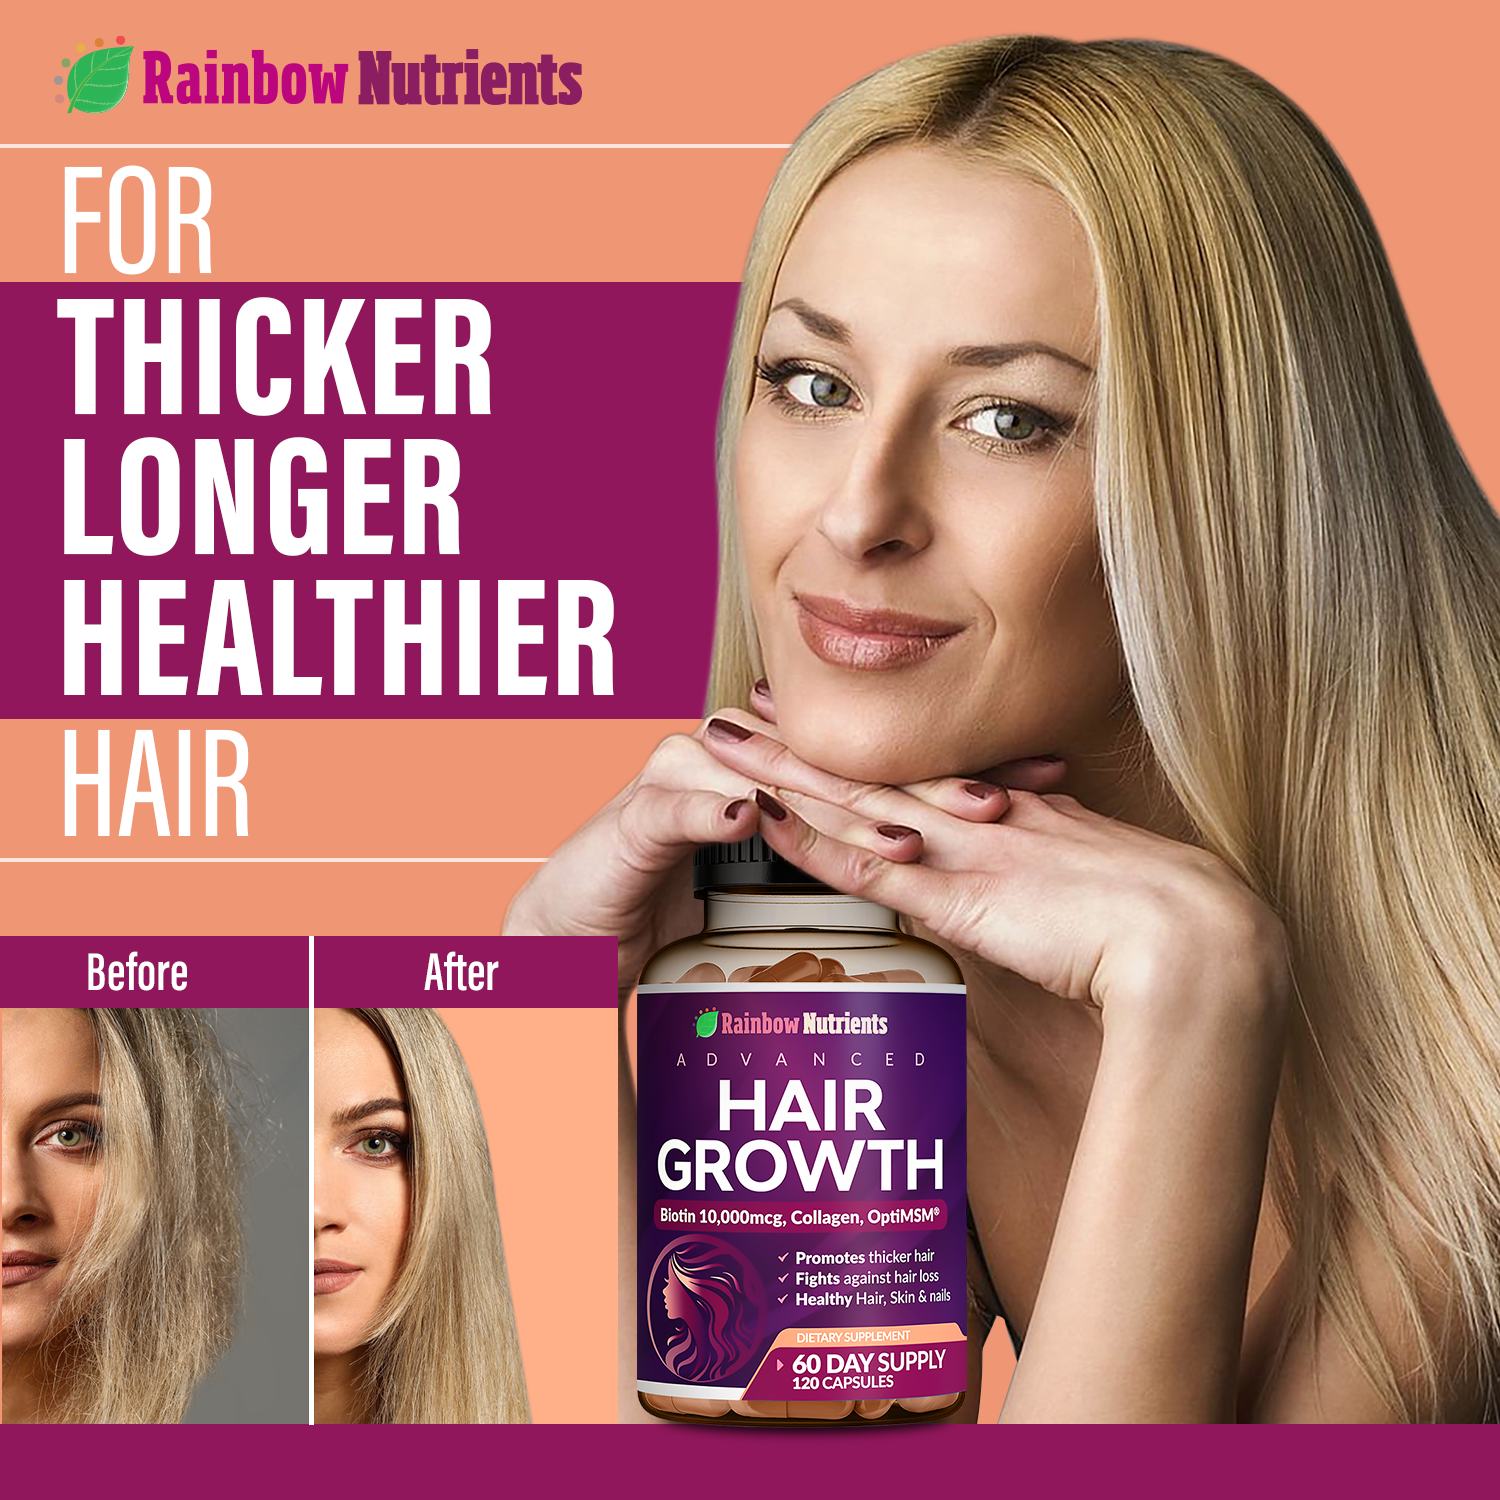 For thicker longer healthier hair